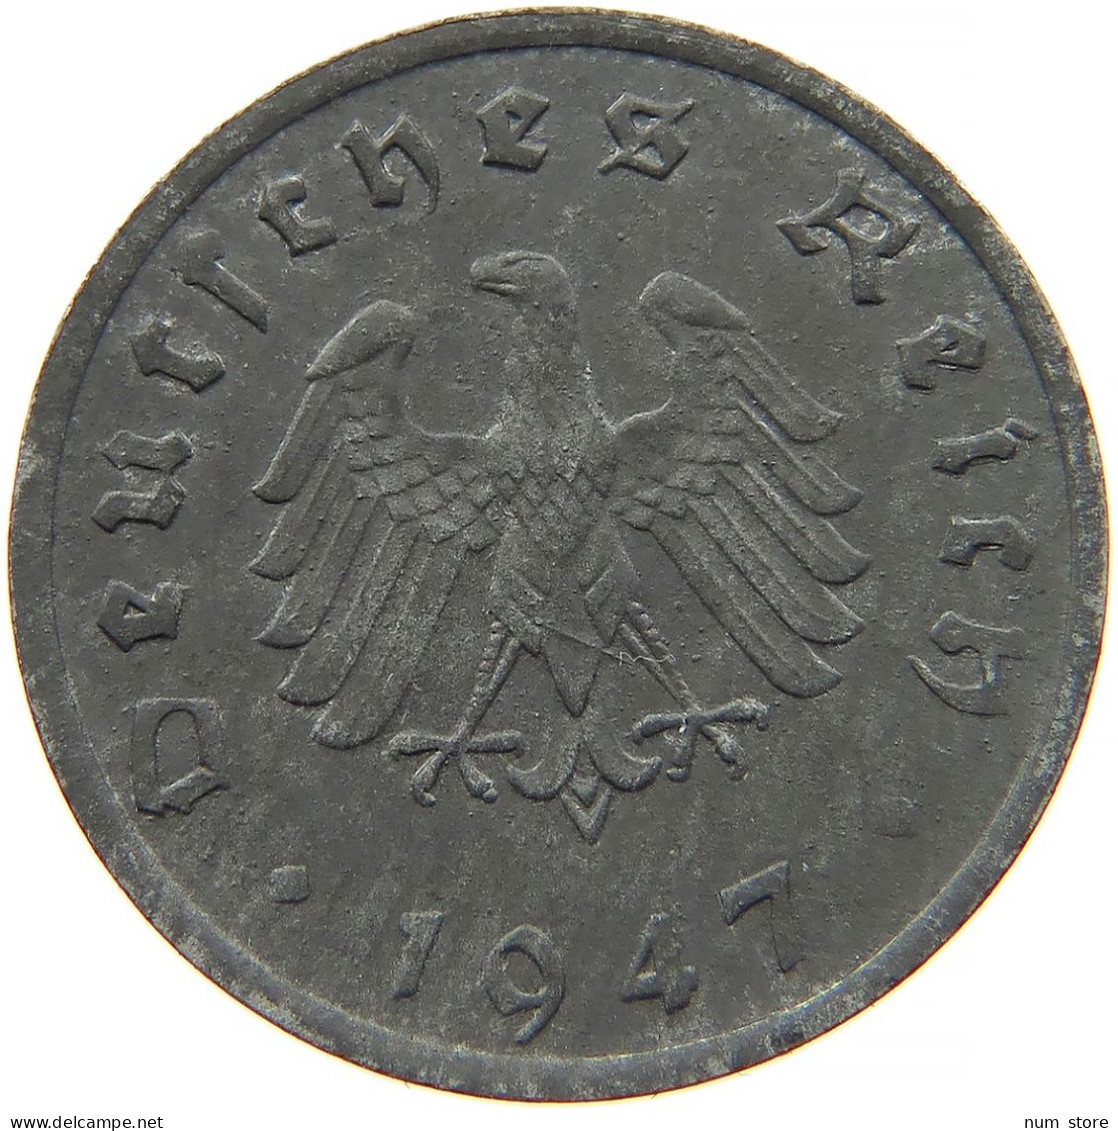 ALLIIERTE BESETZUNG 10 REICHSPFENNIG 1947 F  #t028 0365 - 10 Reichspfennig